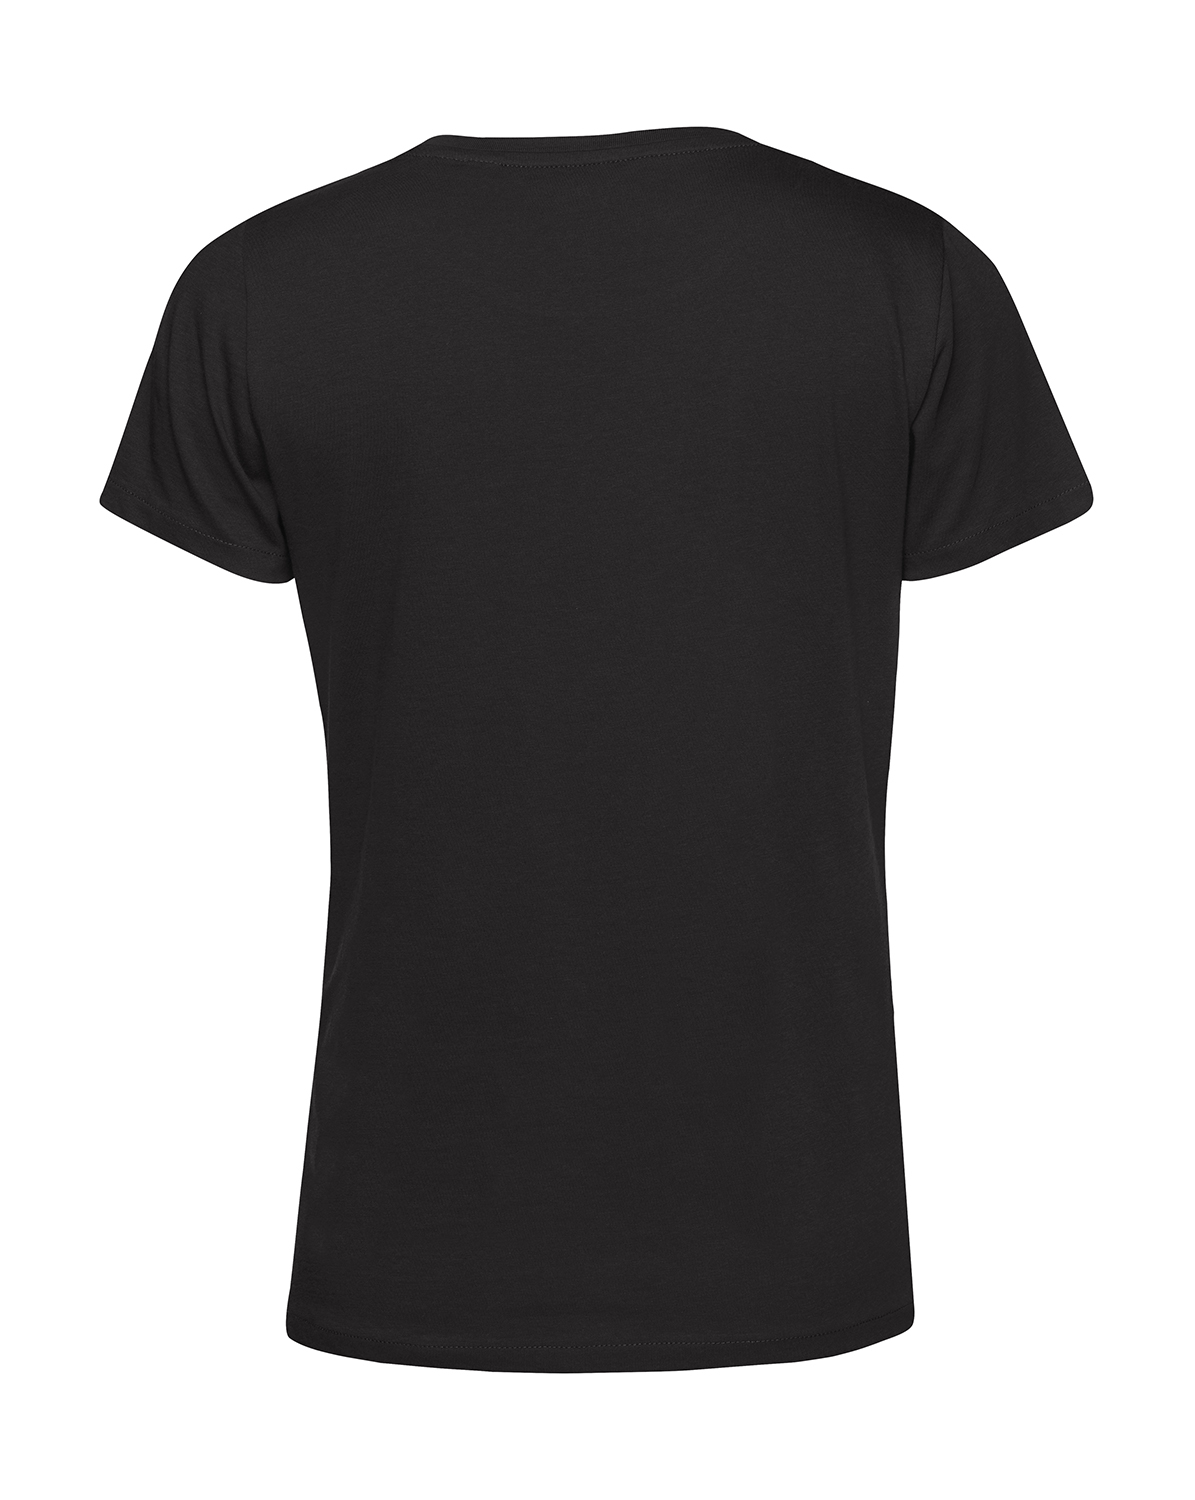 Nachhaltiges T-Shirt Damen 2Takt - Ganze Tankfüllung Schwalbe